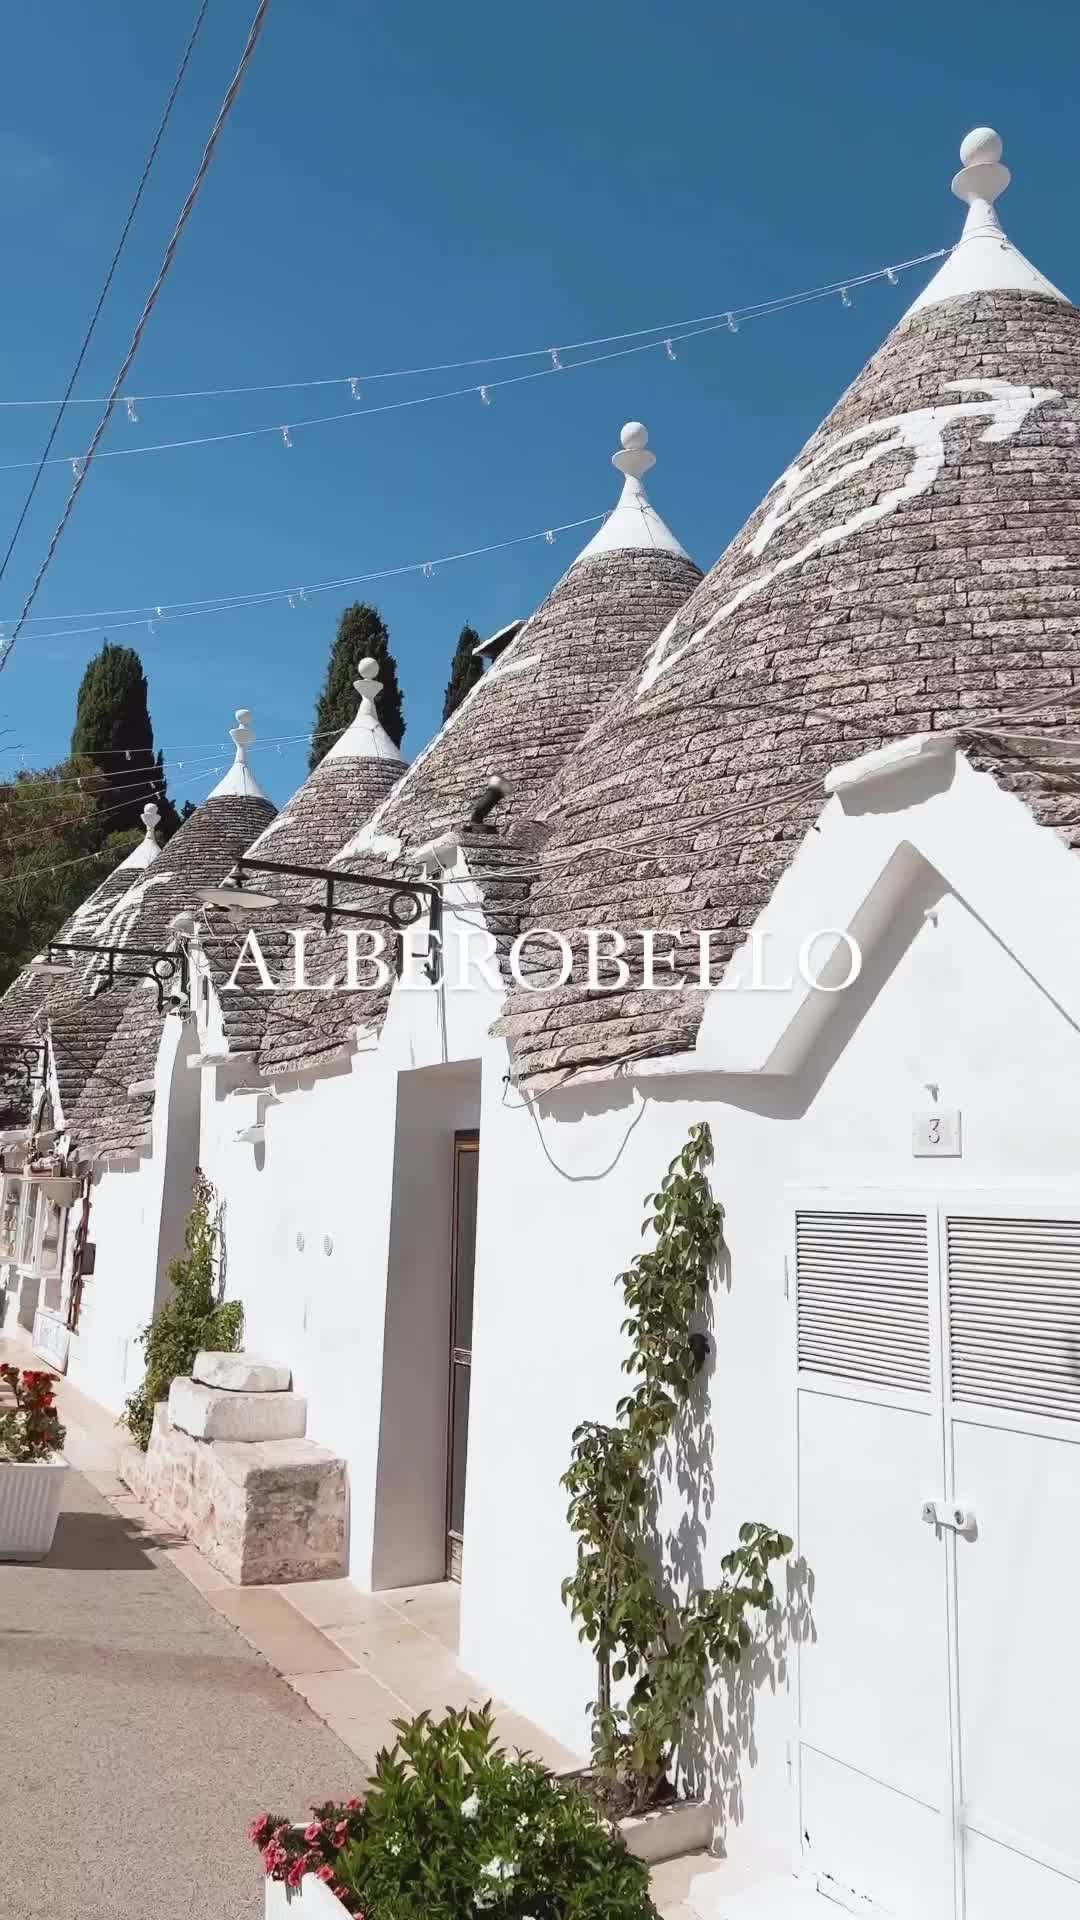 Discover Alberobello: Unique Trulli Houses in Puglia